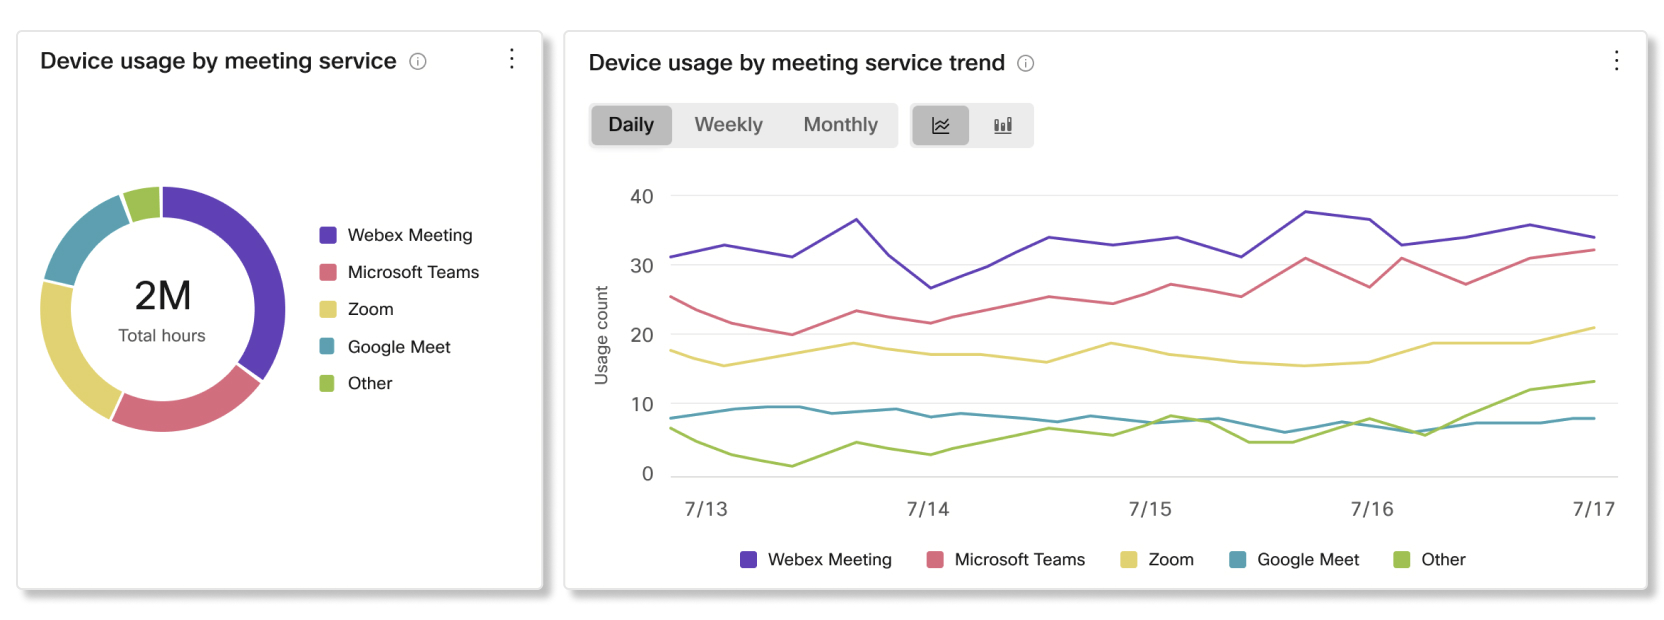 Control Hub设备分析中按会议服务和趋势图表显示的设备使用情况